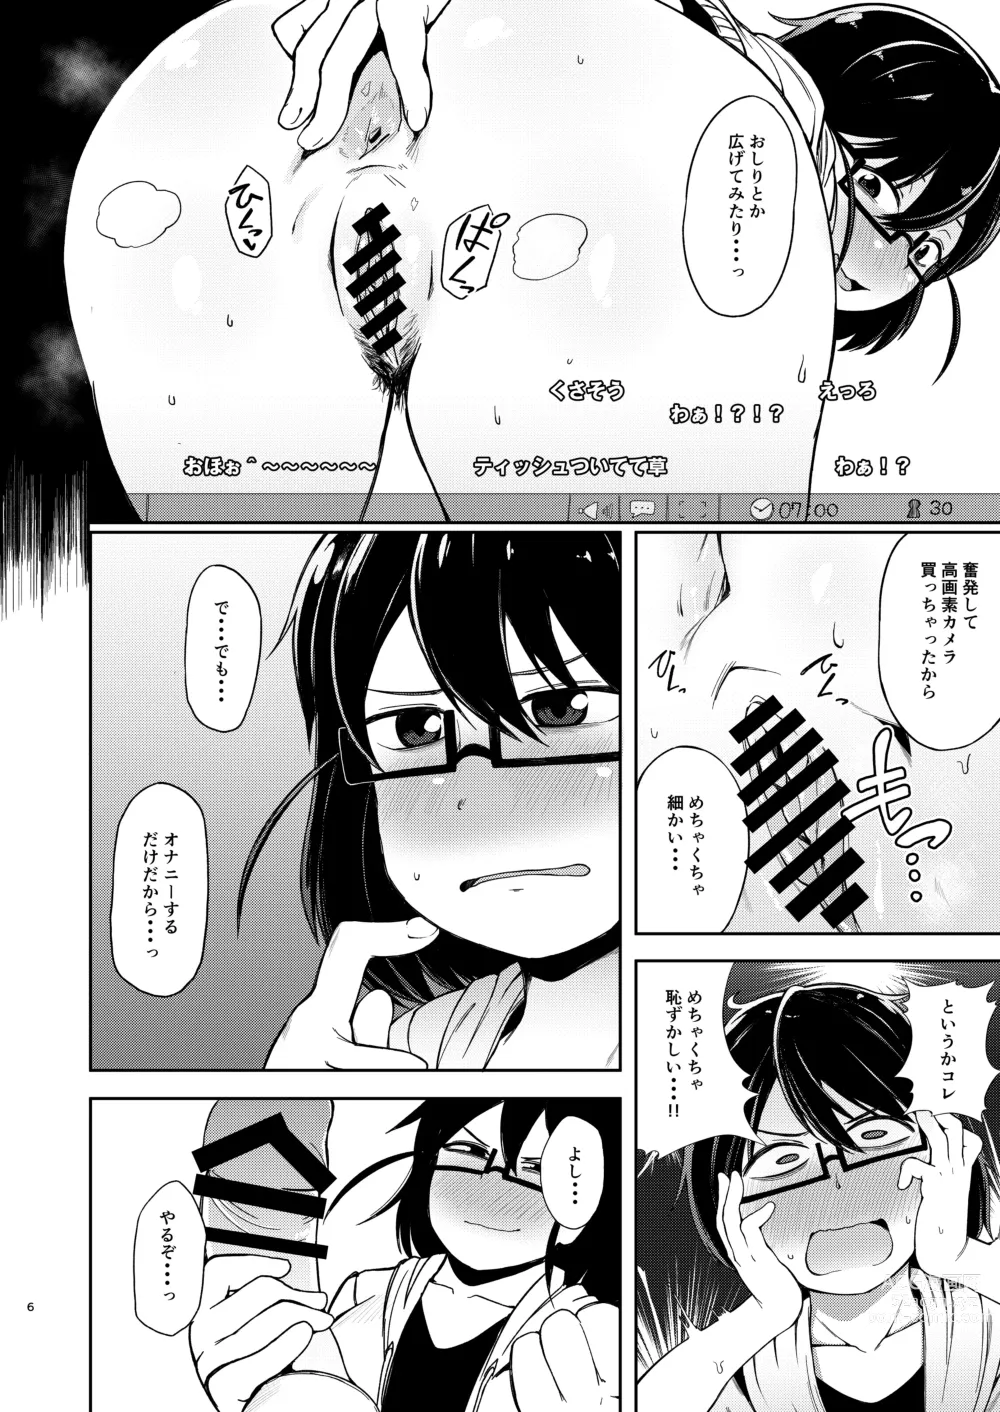 Page 5 of doujinshi Shiko_Ne_Freak EXTEND